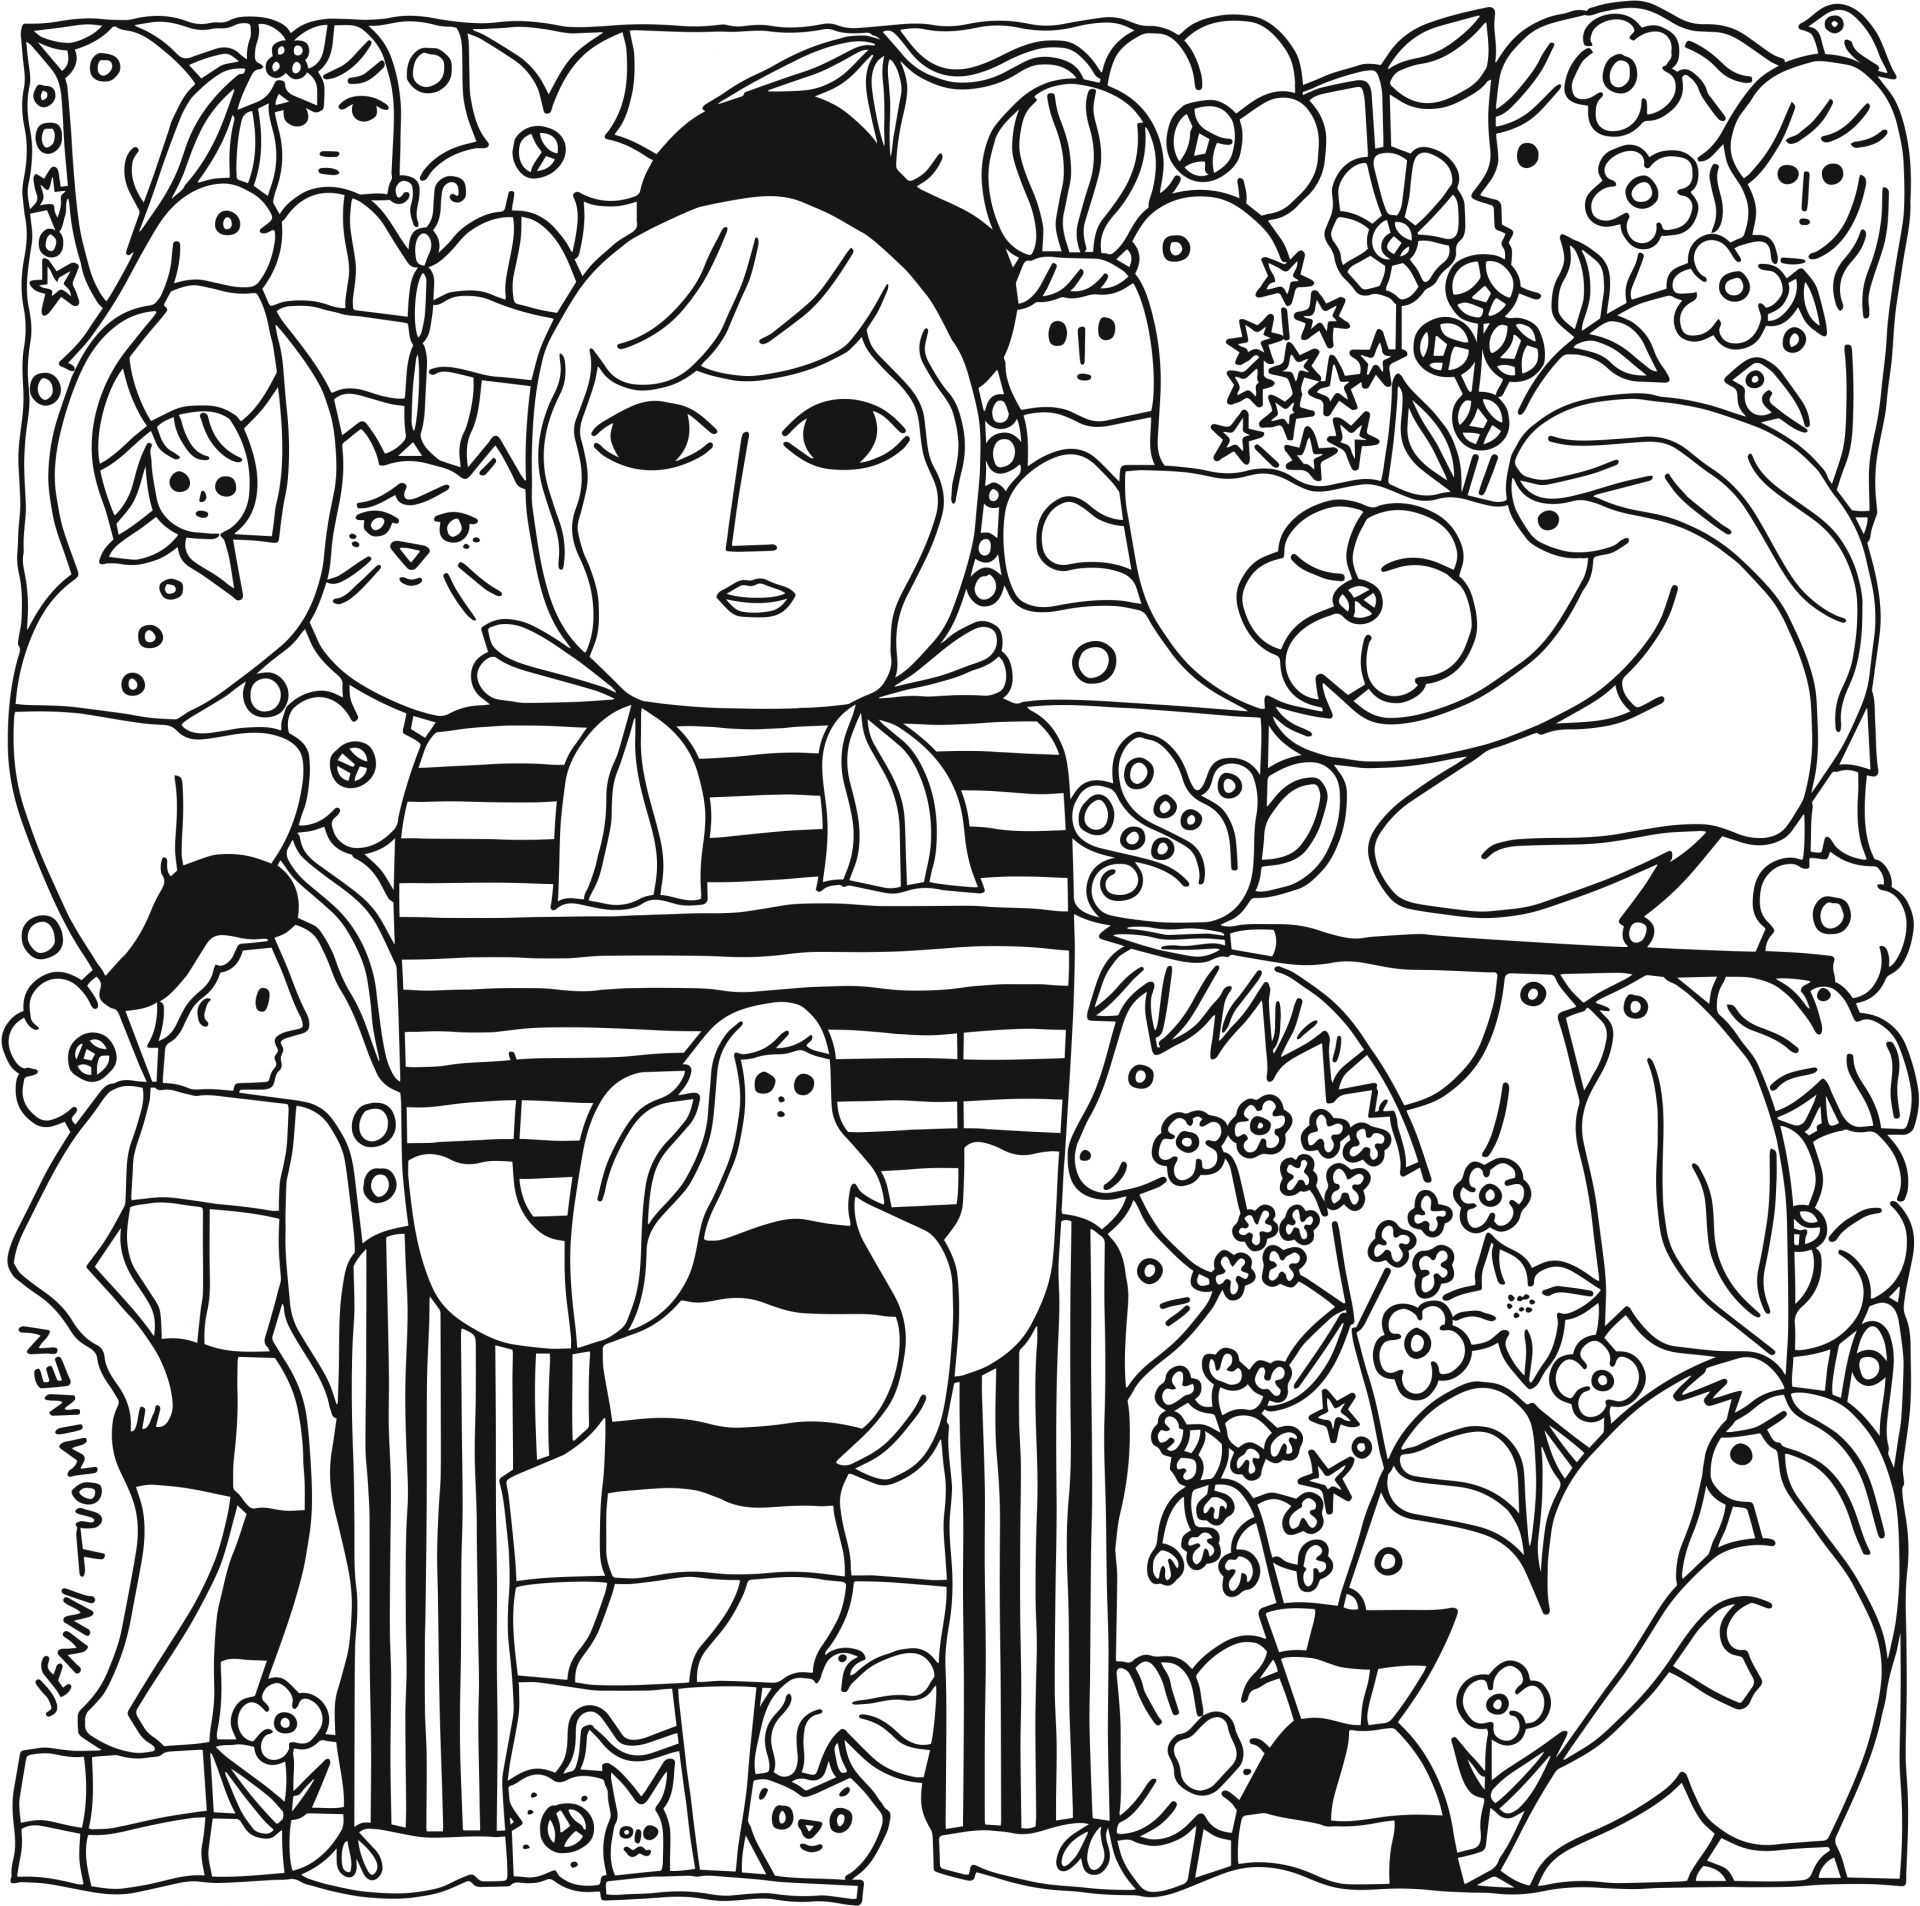 svartvit illustration med männuskor, djur och växter. Jenni Tuominen, Konstrundan 2022